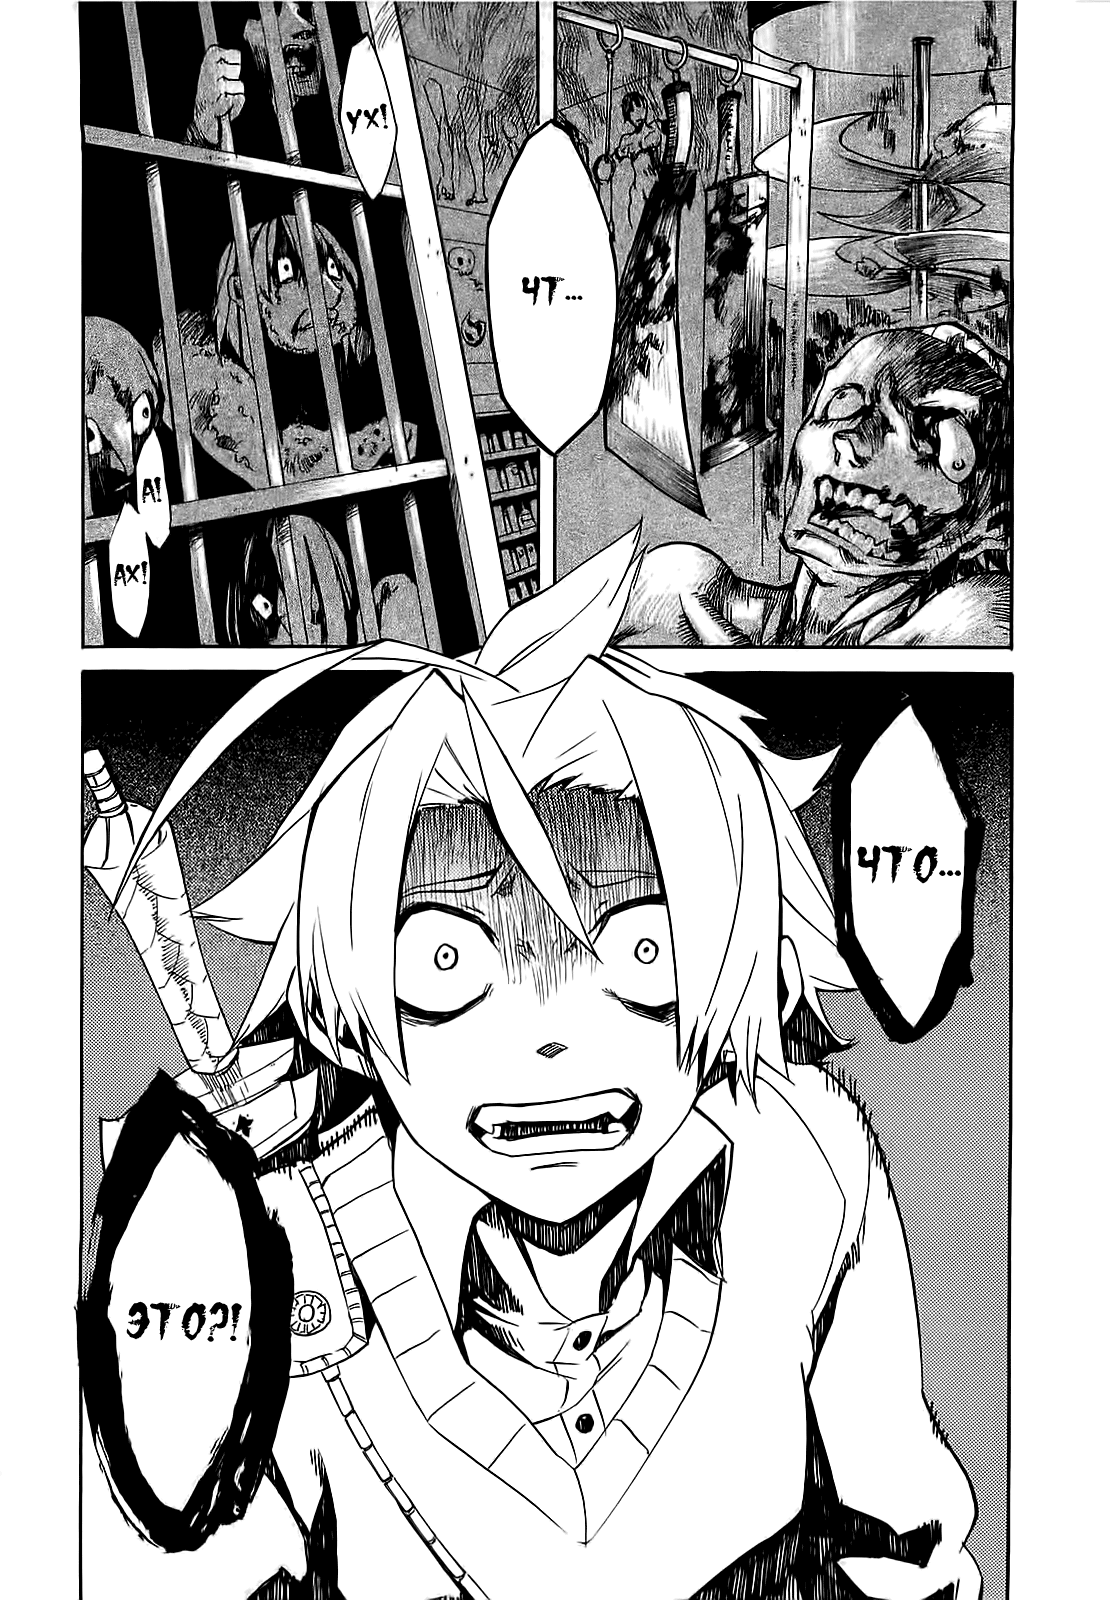 Стр. 75 :: Убийца Акаме! :: Akame ga KILL! :: Глава 1 :: Yagami - онлайн  читалка манги, манхвы и маньхуа